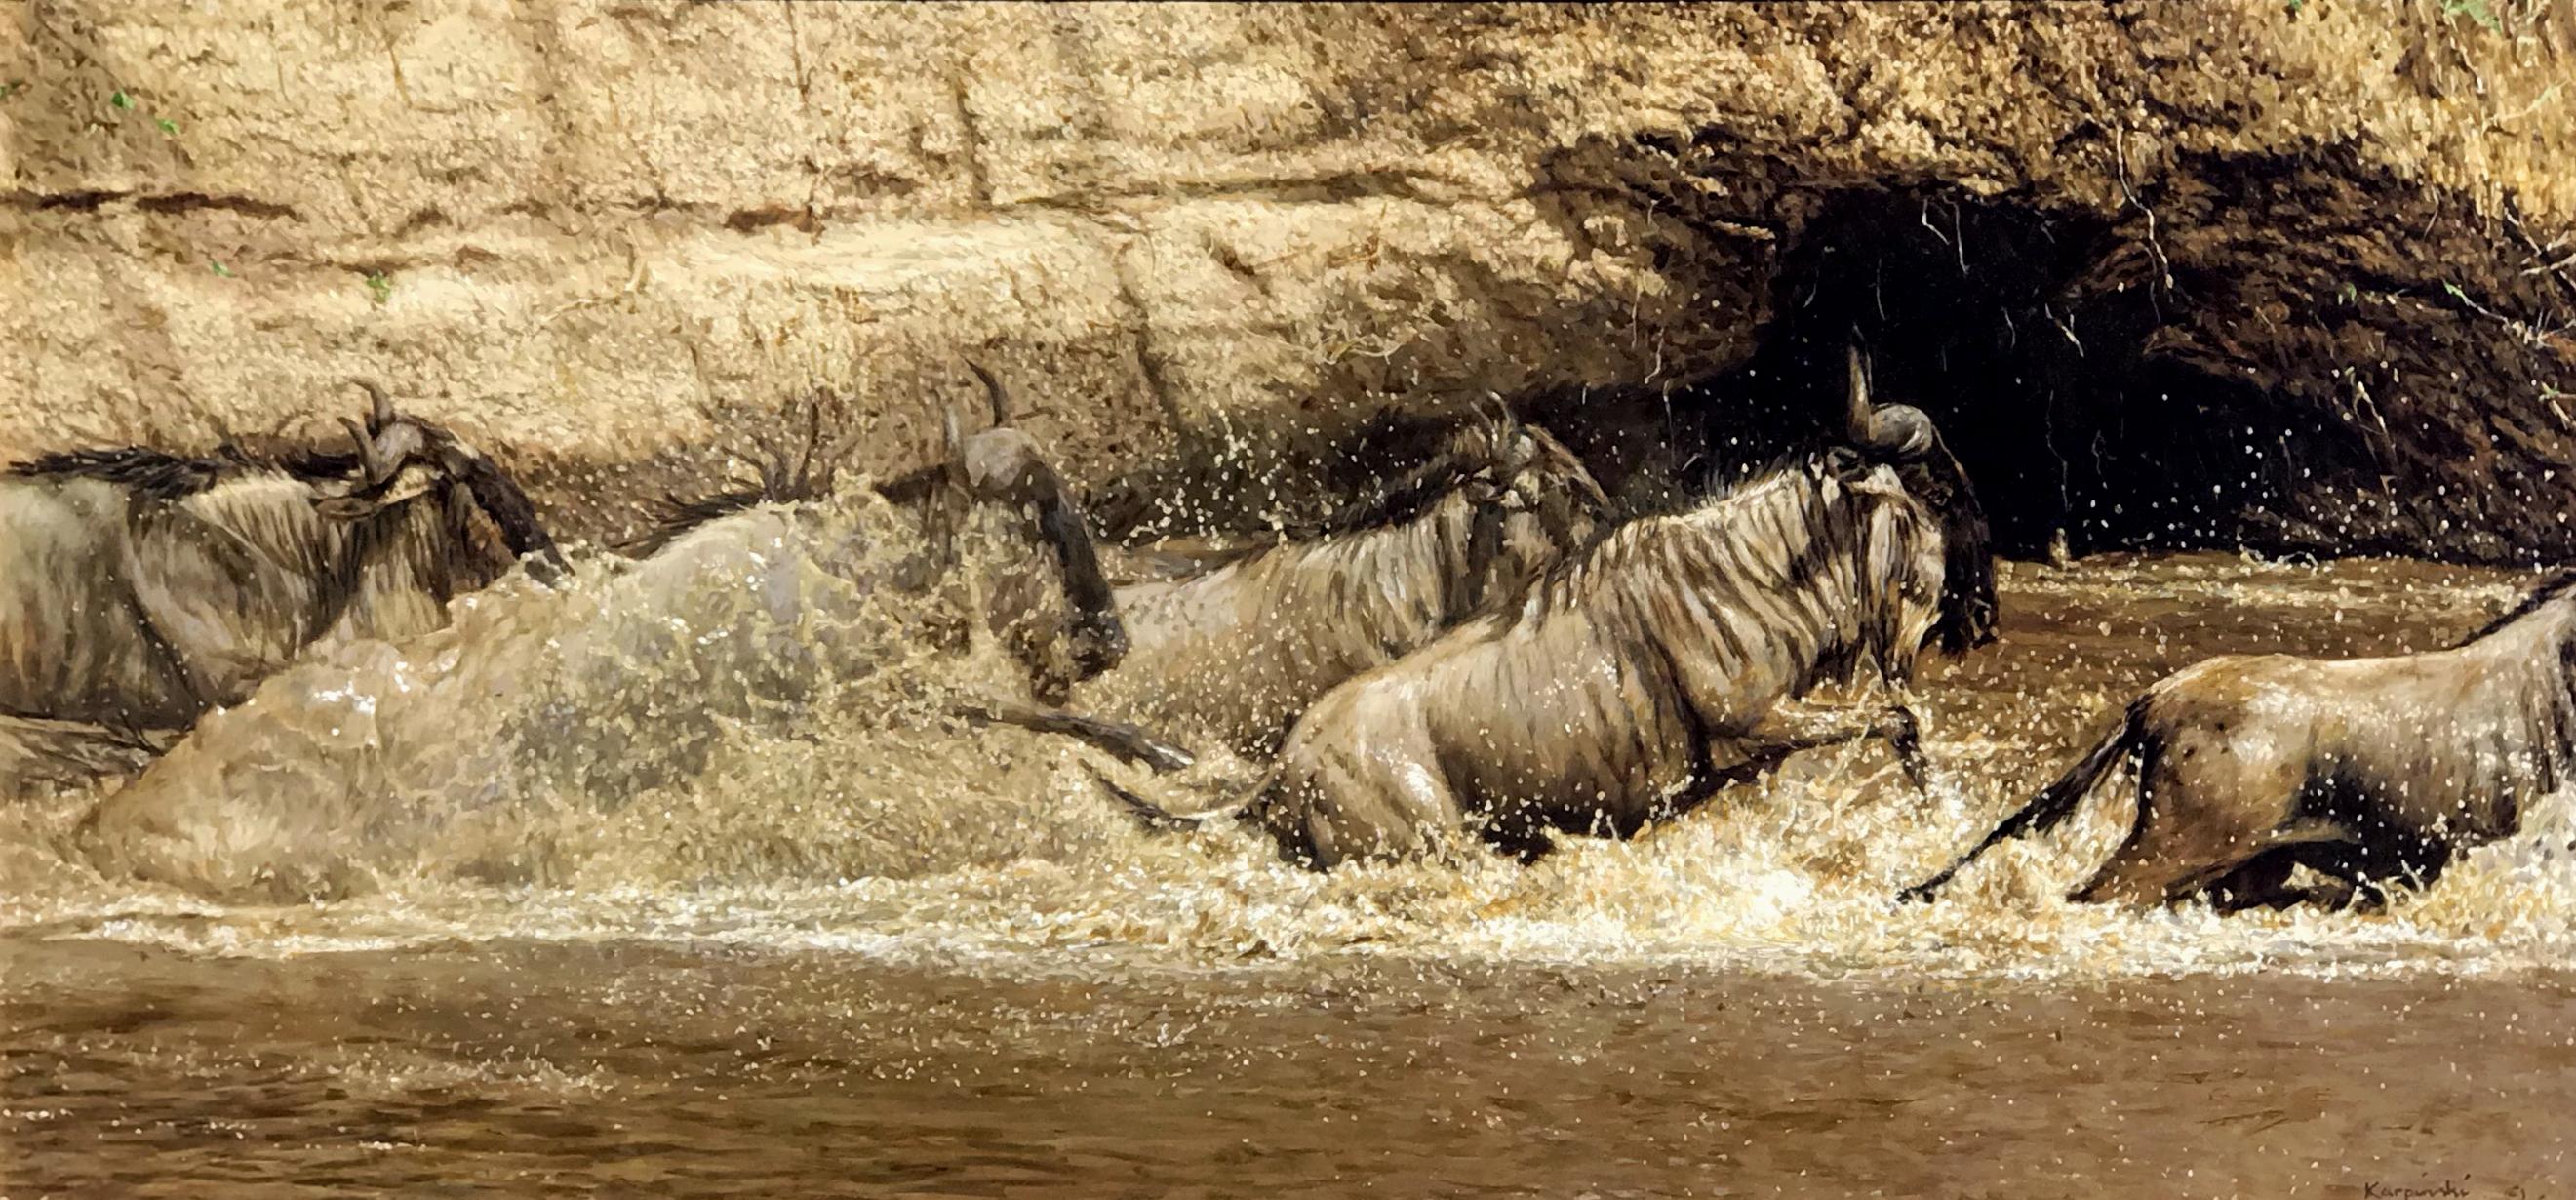 Wildebeest Crossing - Painting by Tony Karpinski